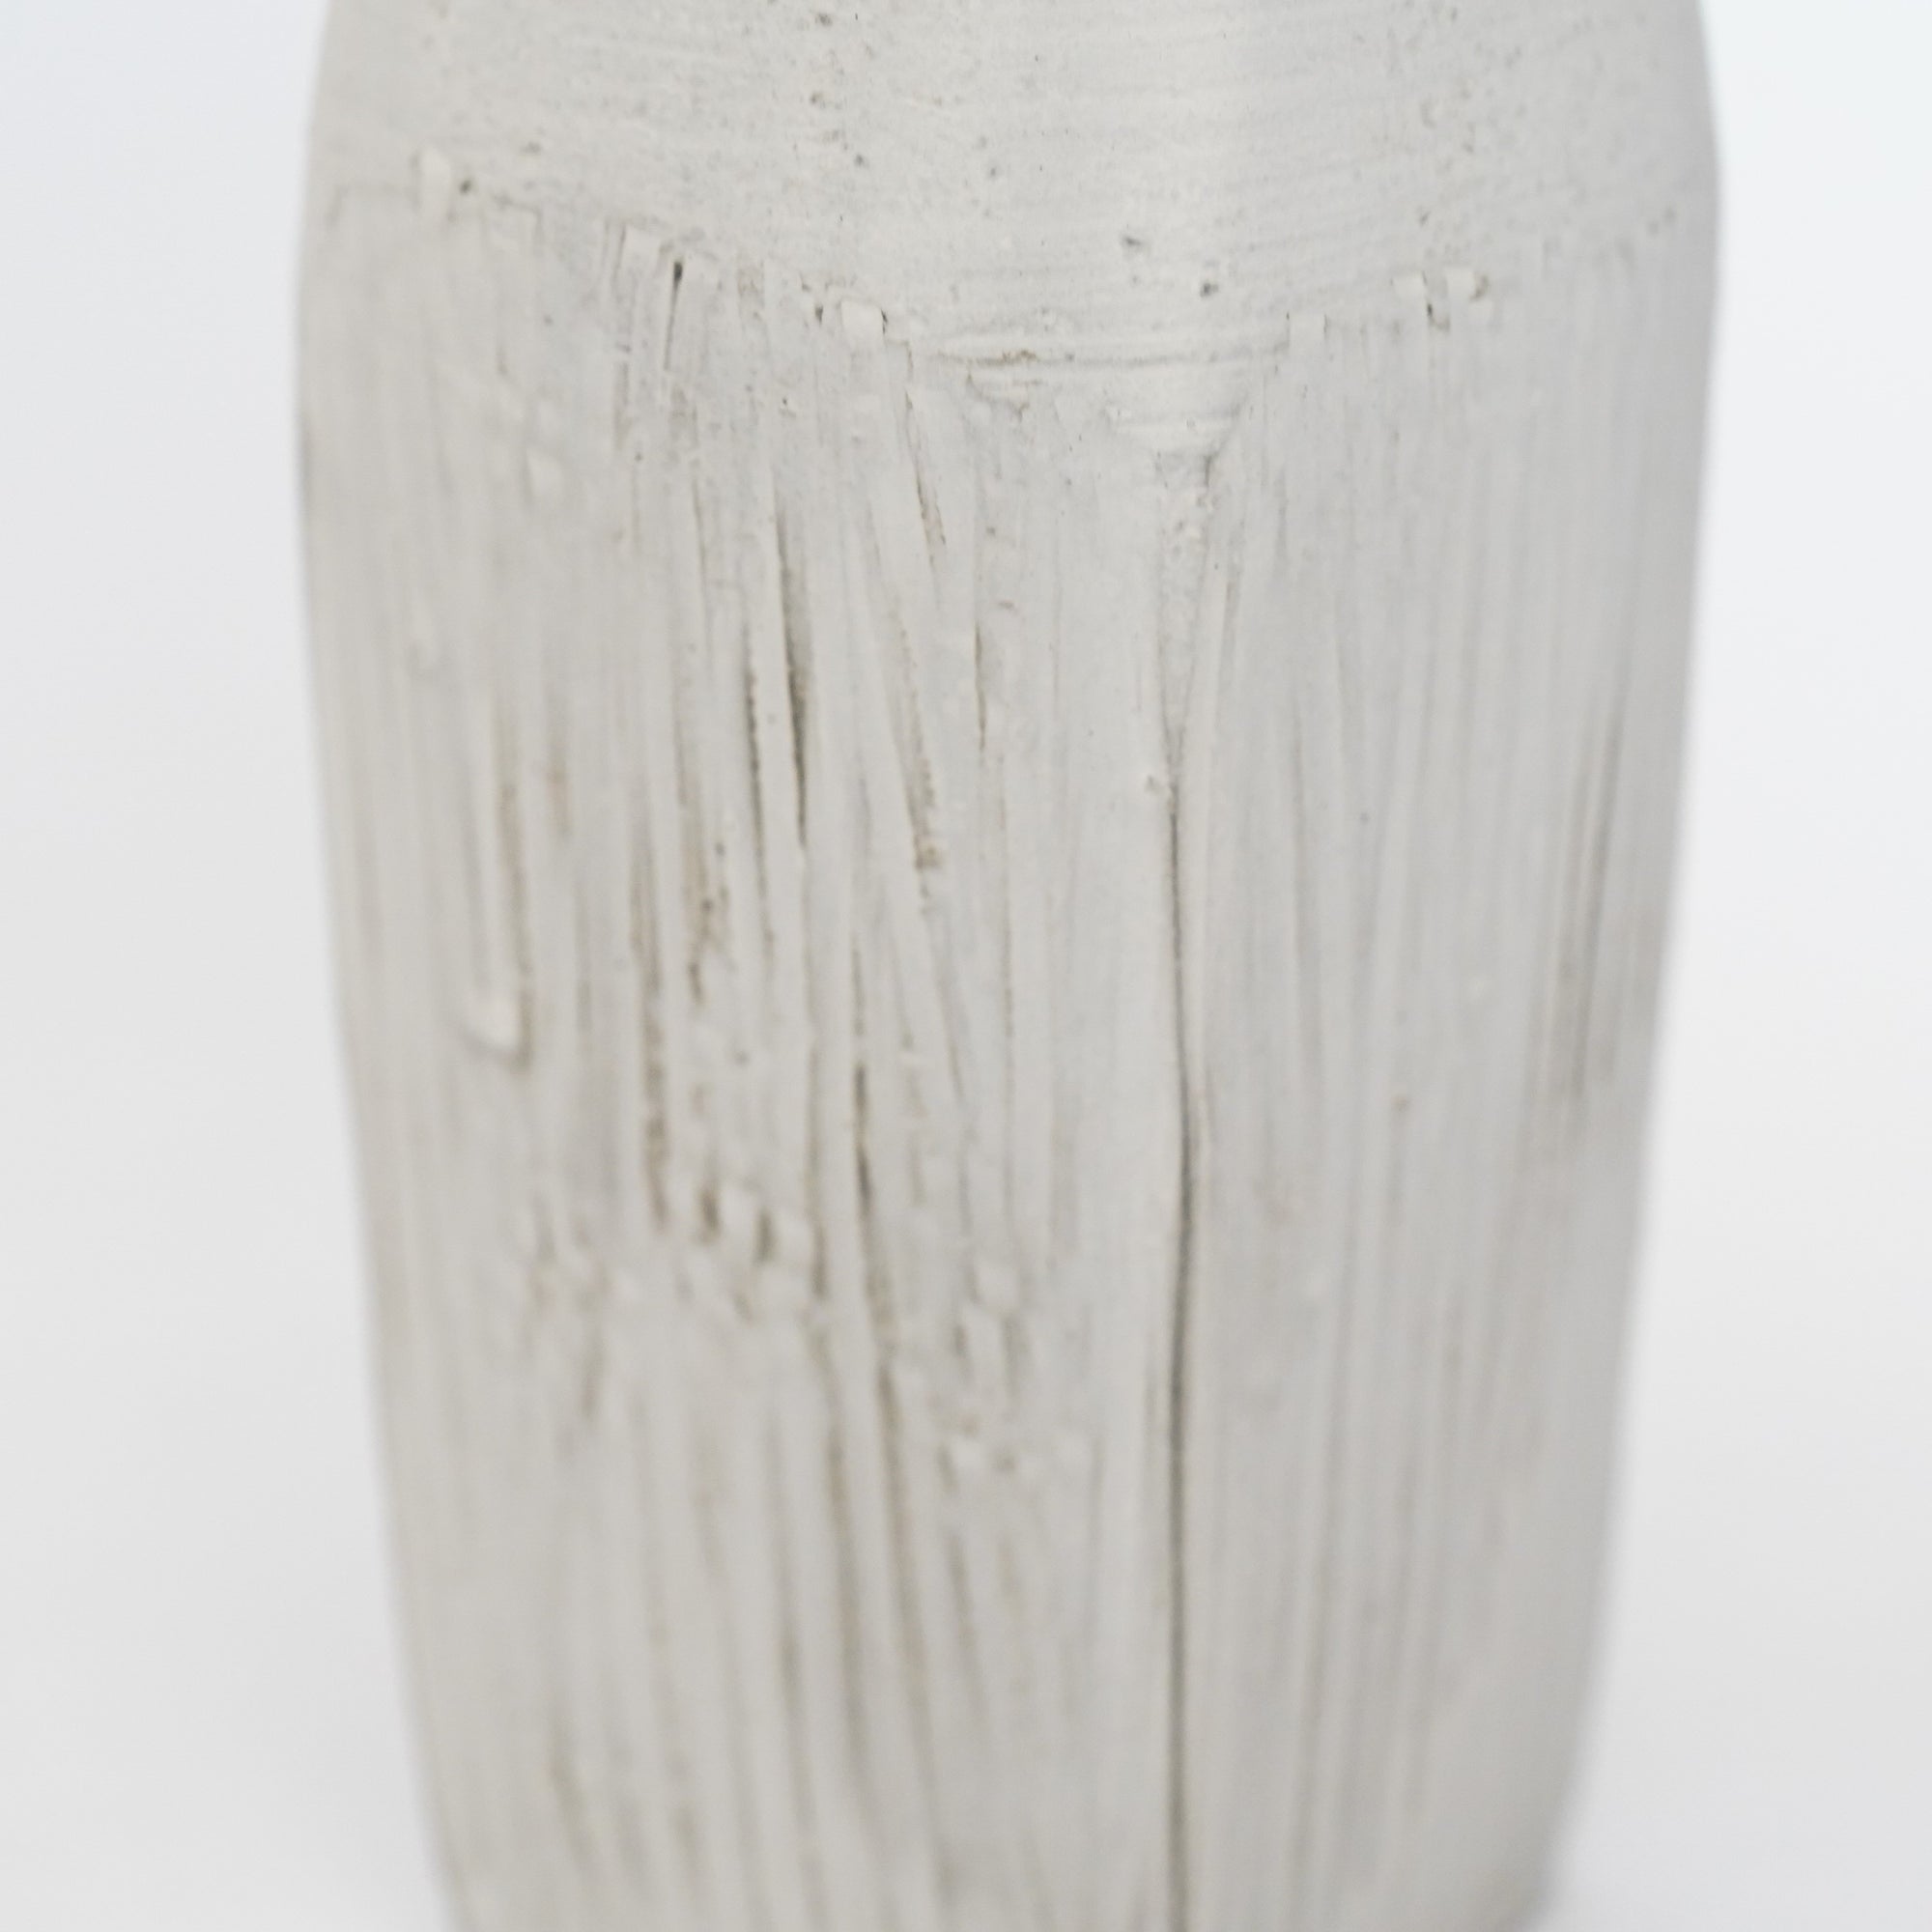 [Etsushi Noguchi] White ceramic square bottle